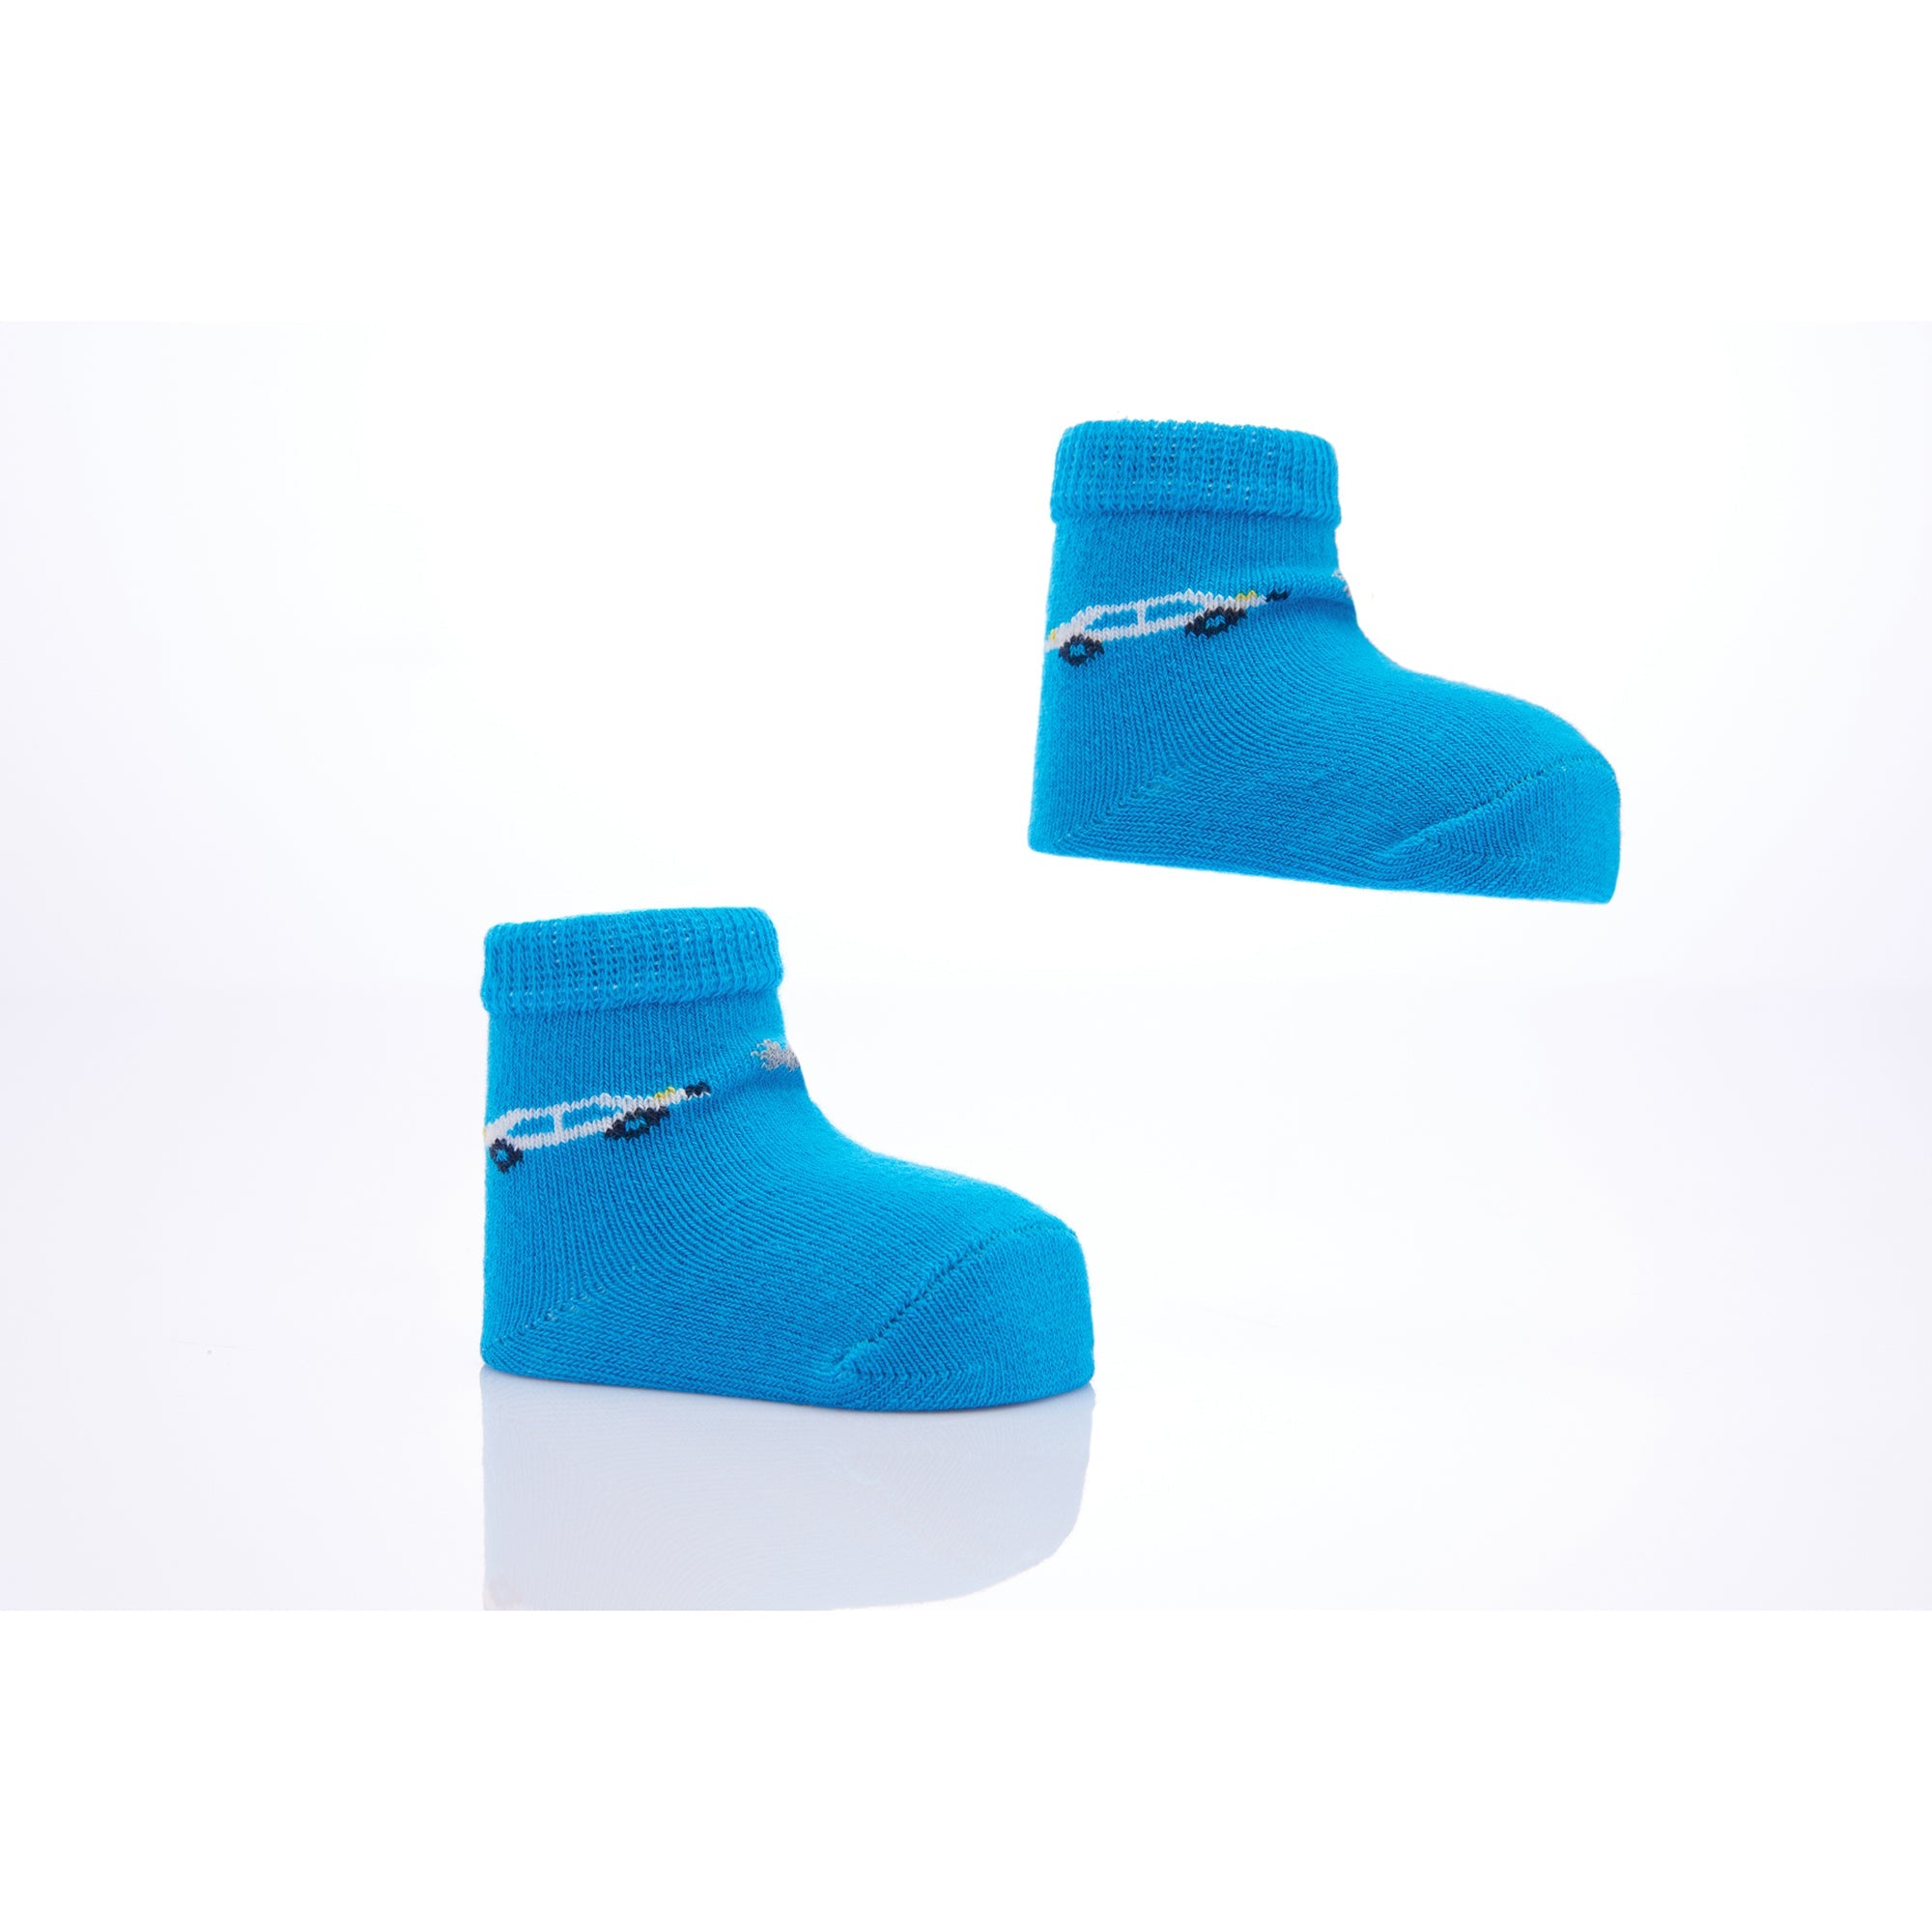 kids-atelier-banblu-baby-boy-blue-3pc-car-print-cotton-socks-set-15-01-0092